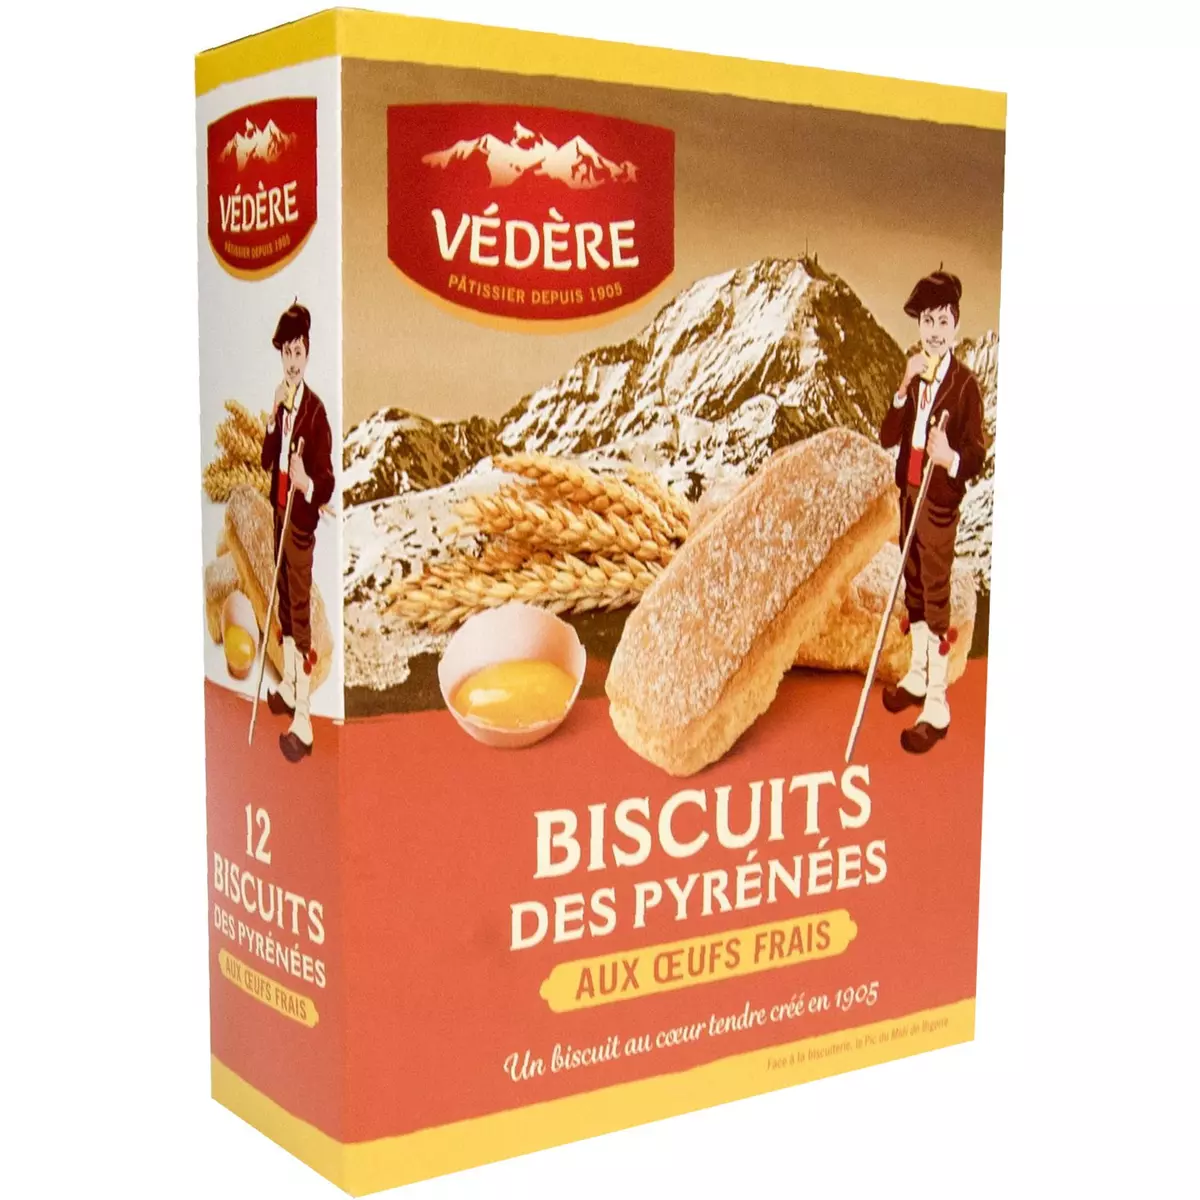 VEDERE Biscuits des Pyrénées 12 biscuits 180g